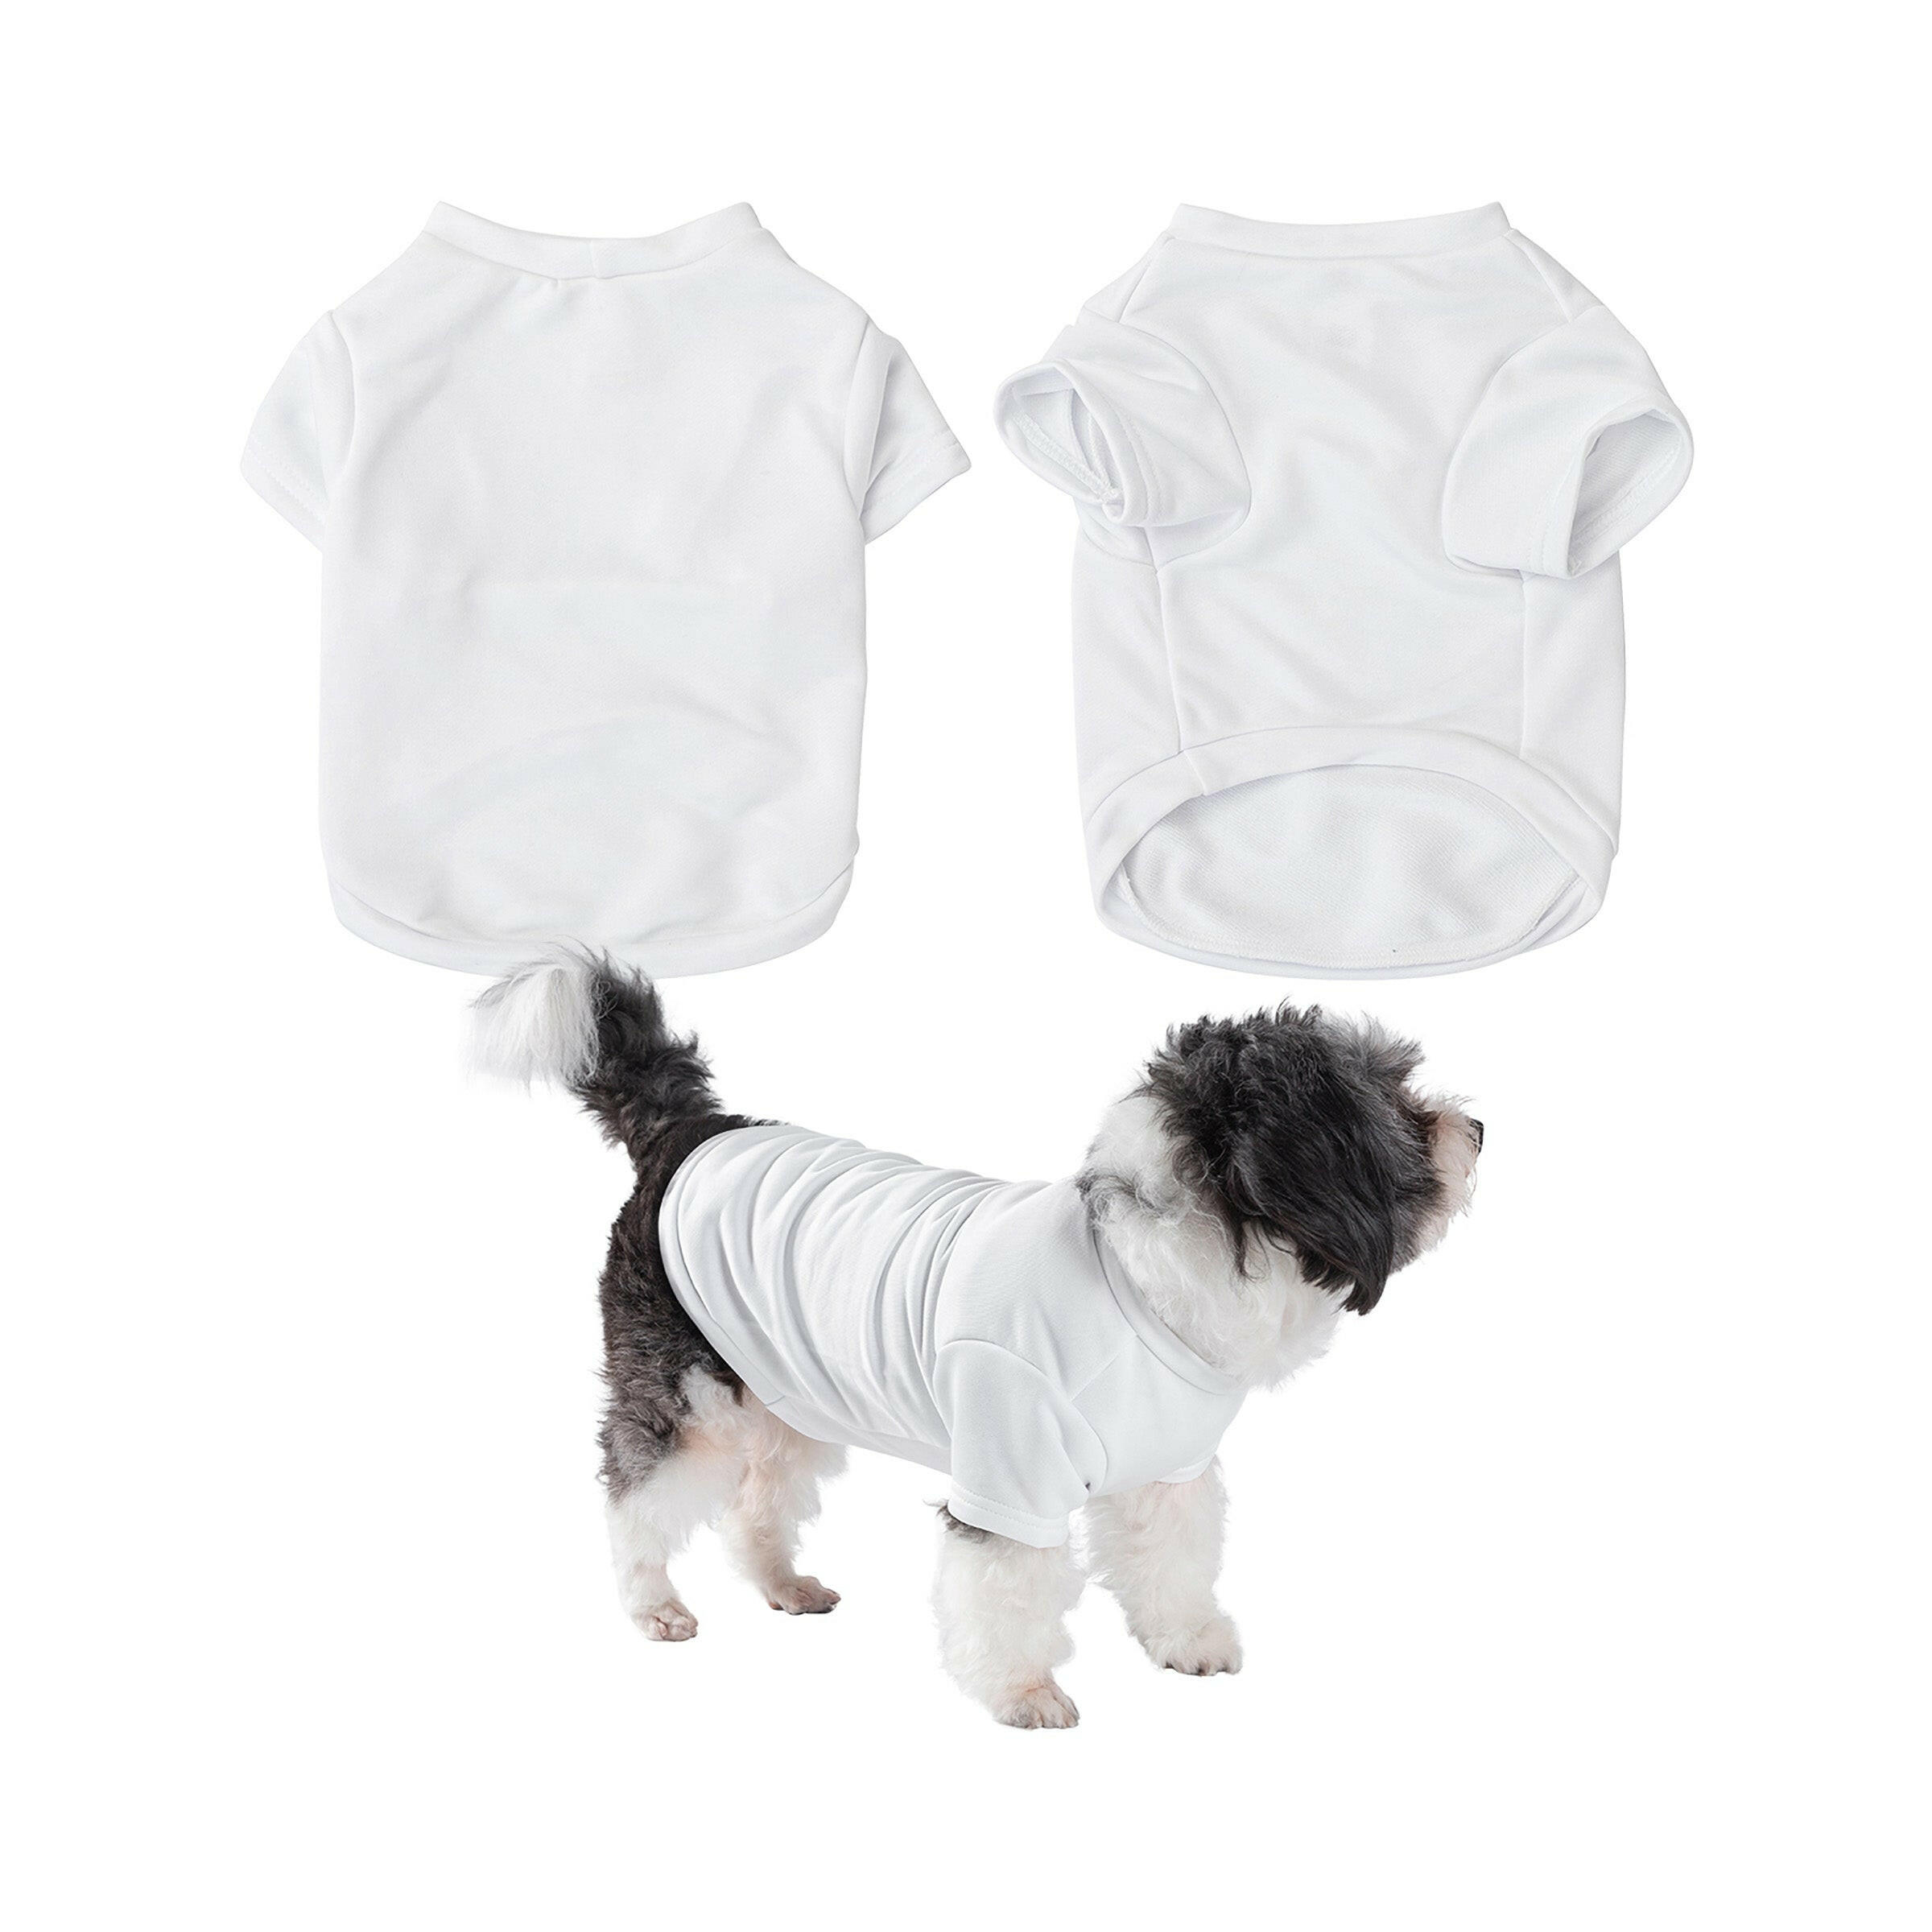 Medium Sublimation Pet T-shirt - 2 Pack.